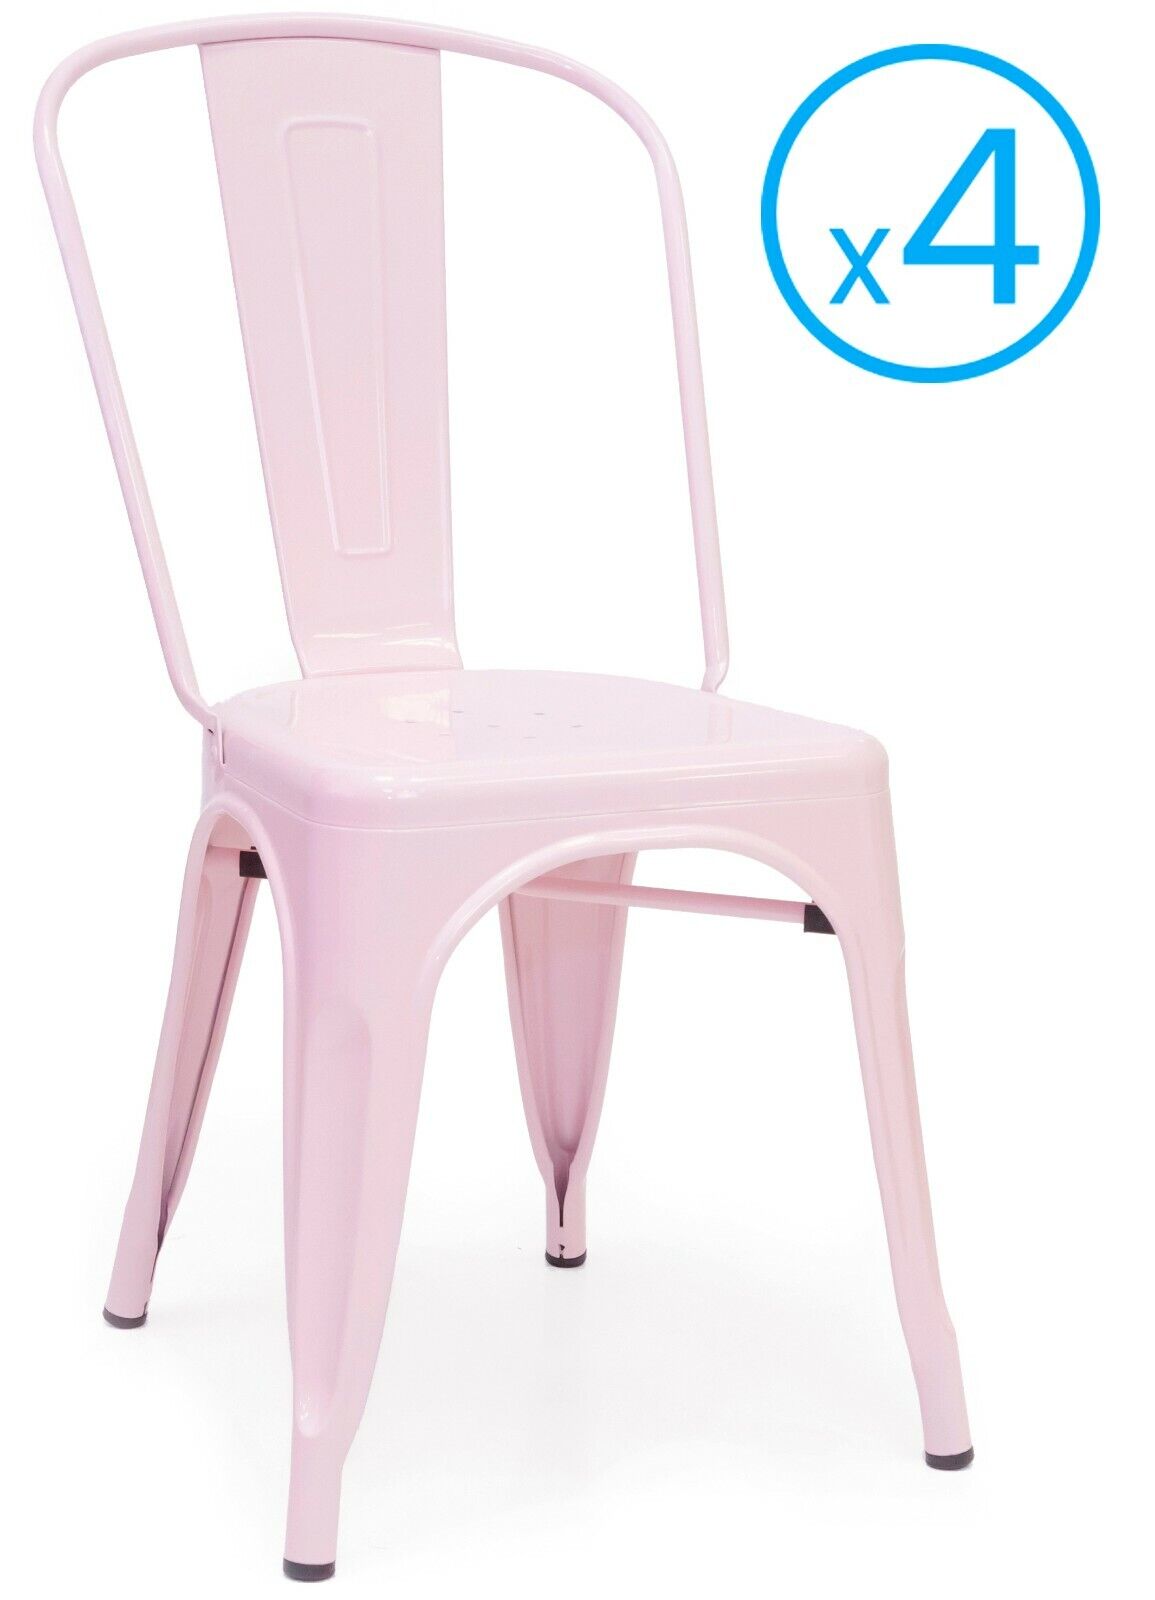 Pack 4 sillas Xavier industrial vintage rosa salon comedor modernas 85x45x53